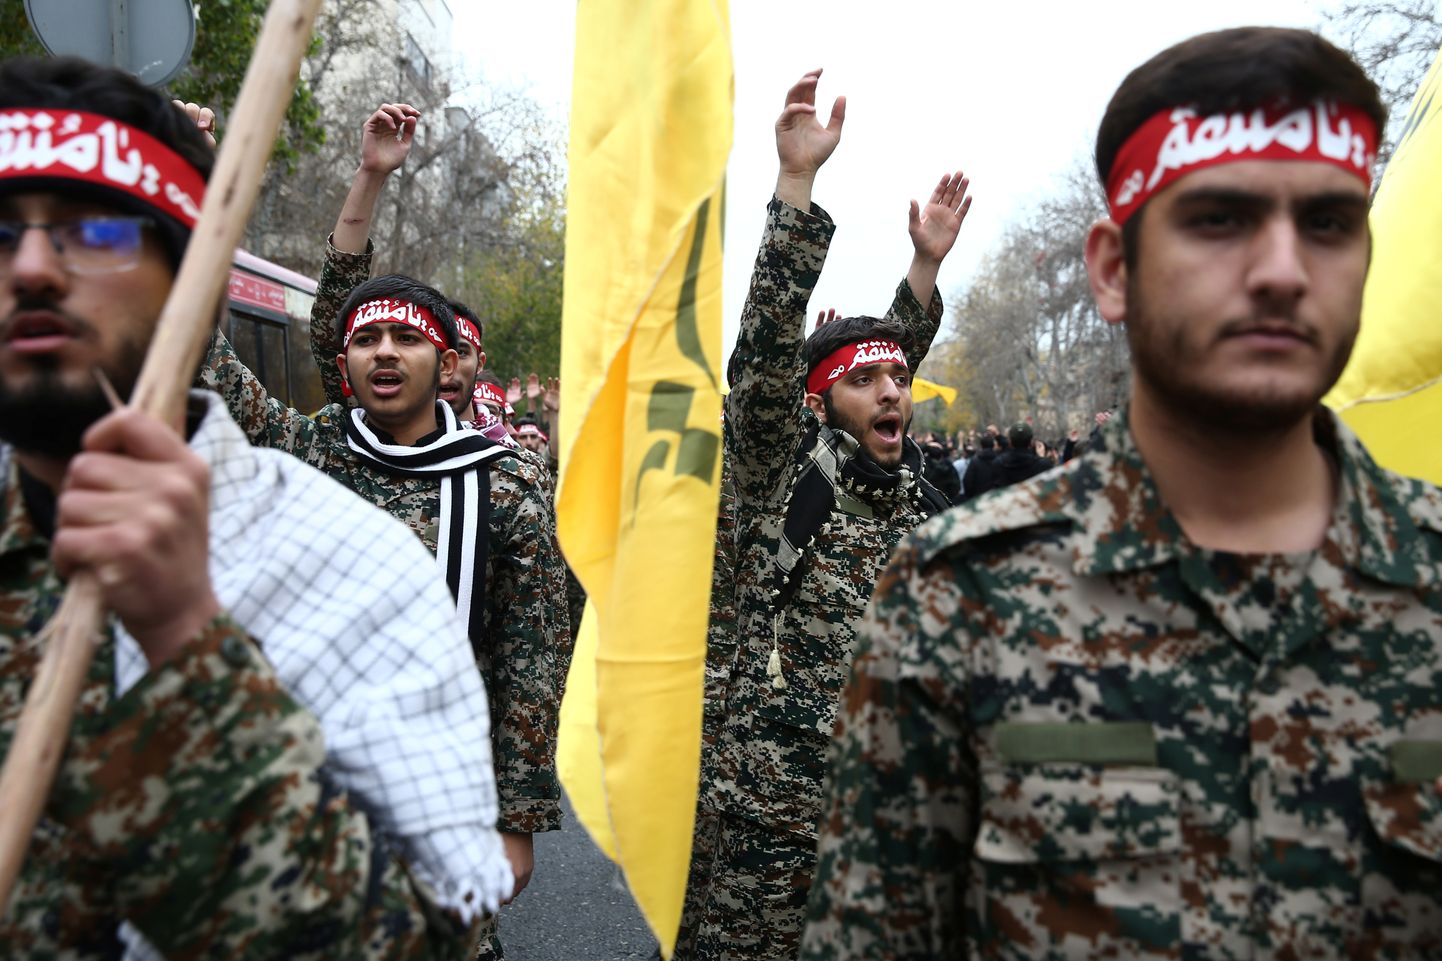 Iraani sõdurid meeleavaldusel Teheranis.